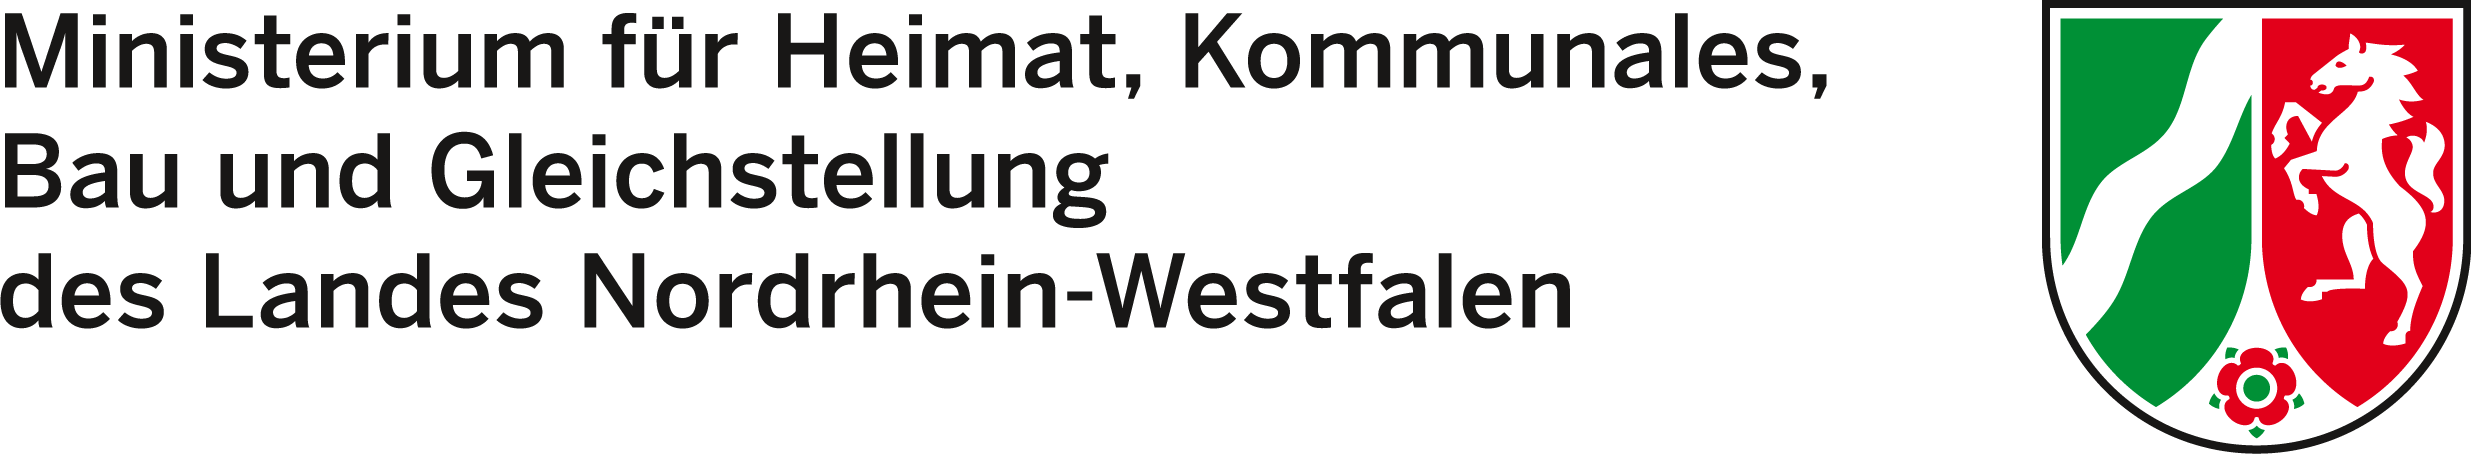 Beirat „Initiative ergreifen“: Ein positives Votum für das WIR-Haus in Wülfrath